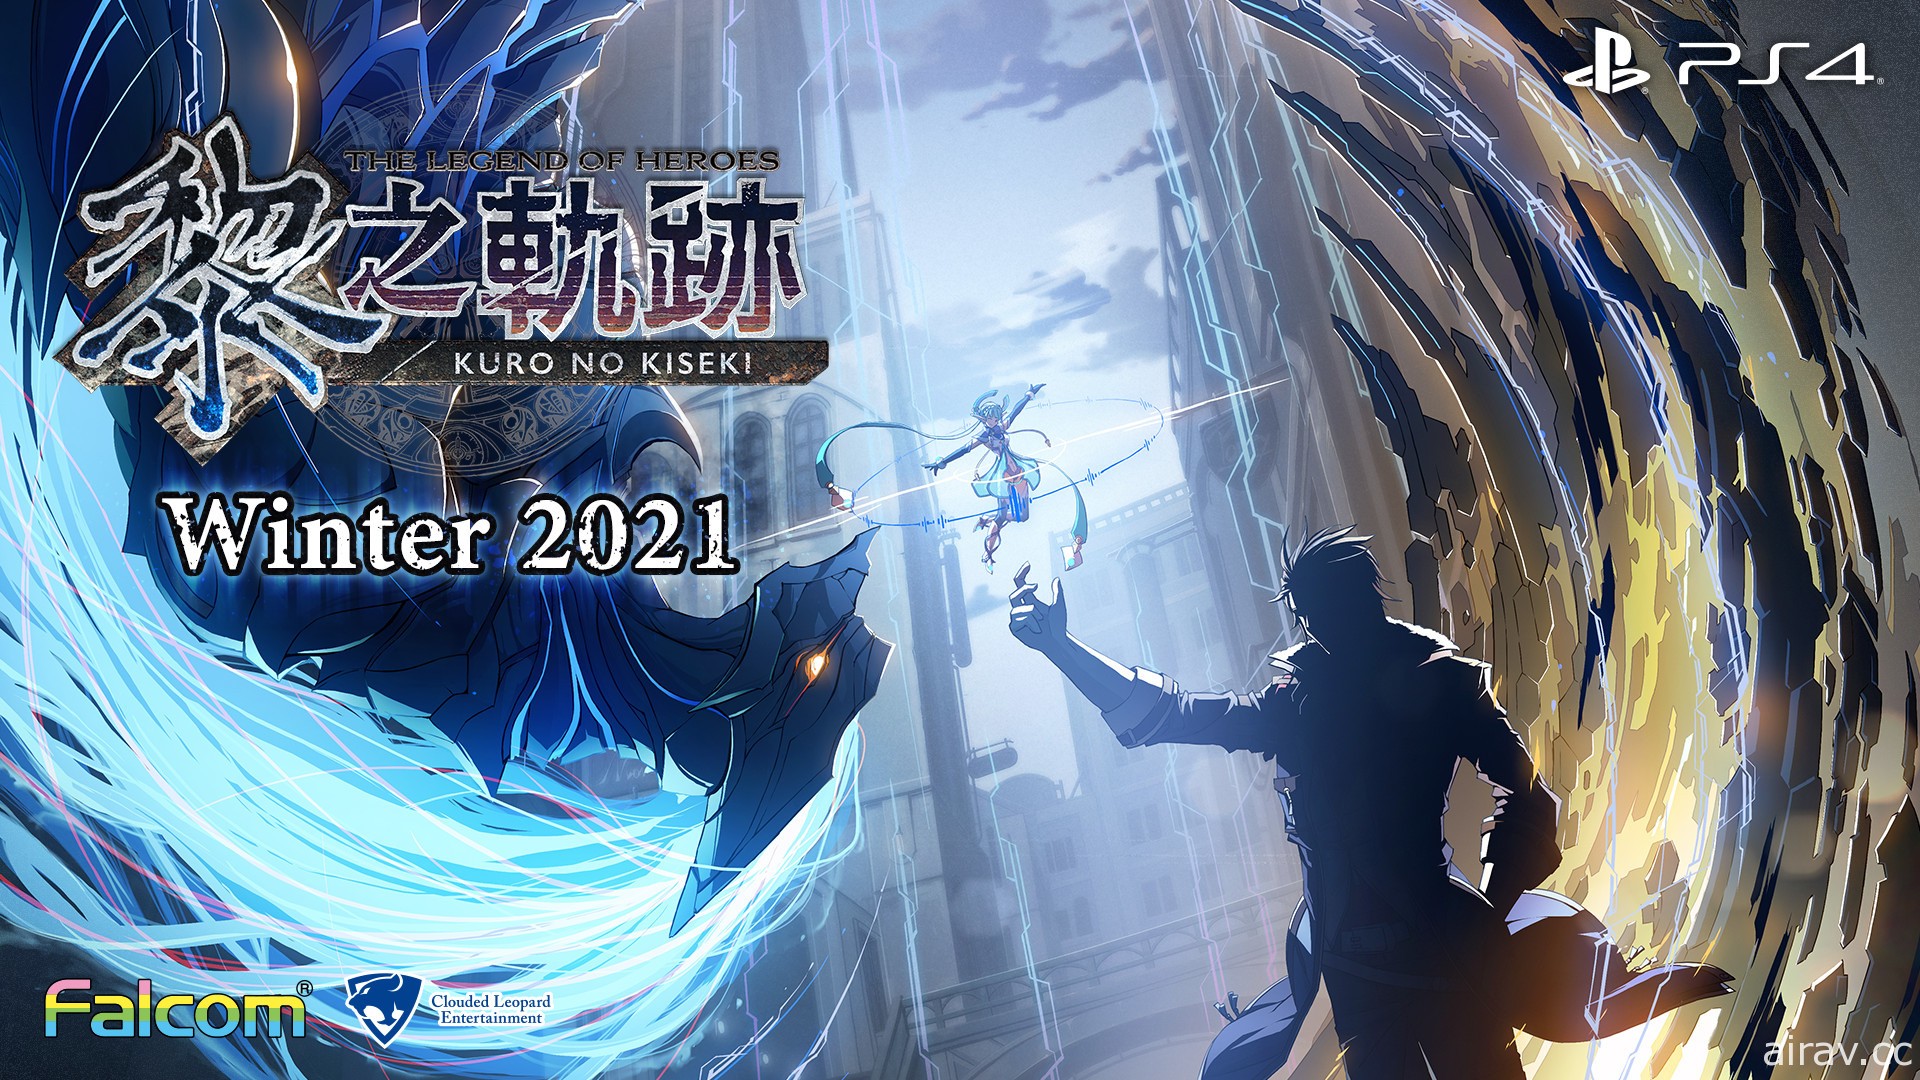 《英雄传说 黎之轨迹》确定 2021 年冬季推出中文版 揭开《轨迹》系列后半故事序幕